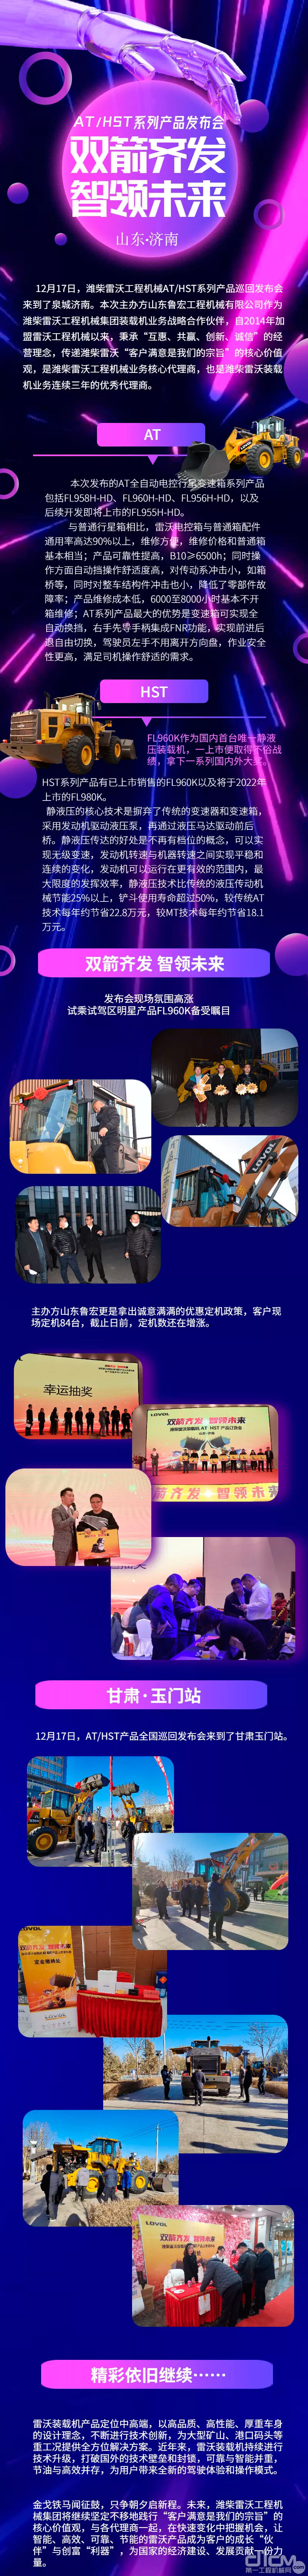 潍柴雷沃工程机械AT/HST系列产品巡回发布会（济南站）